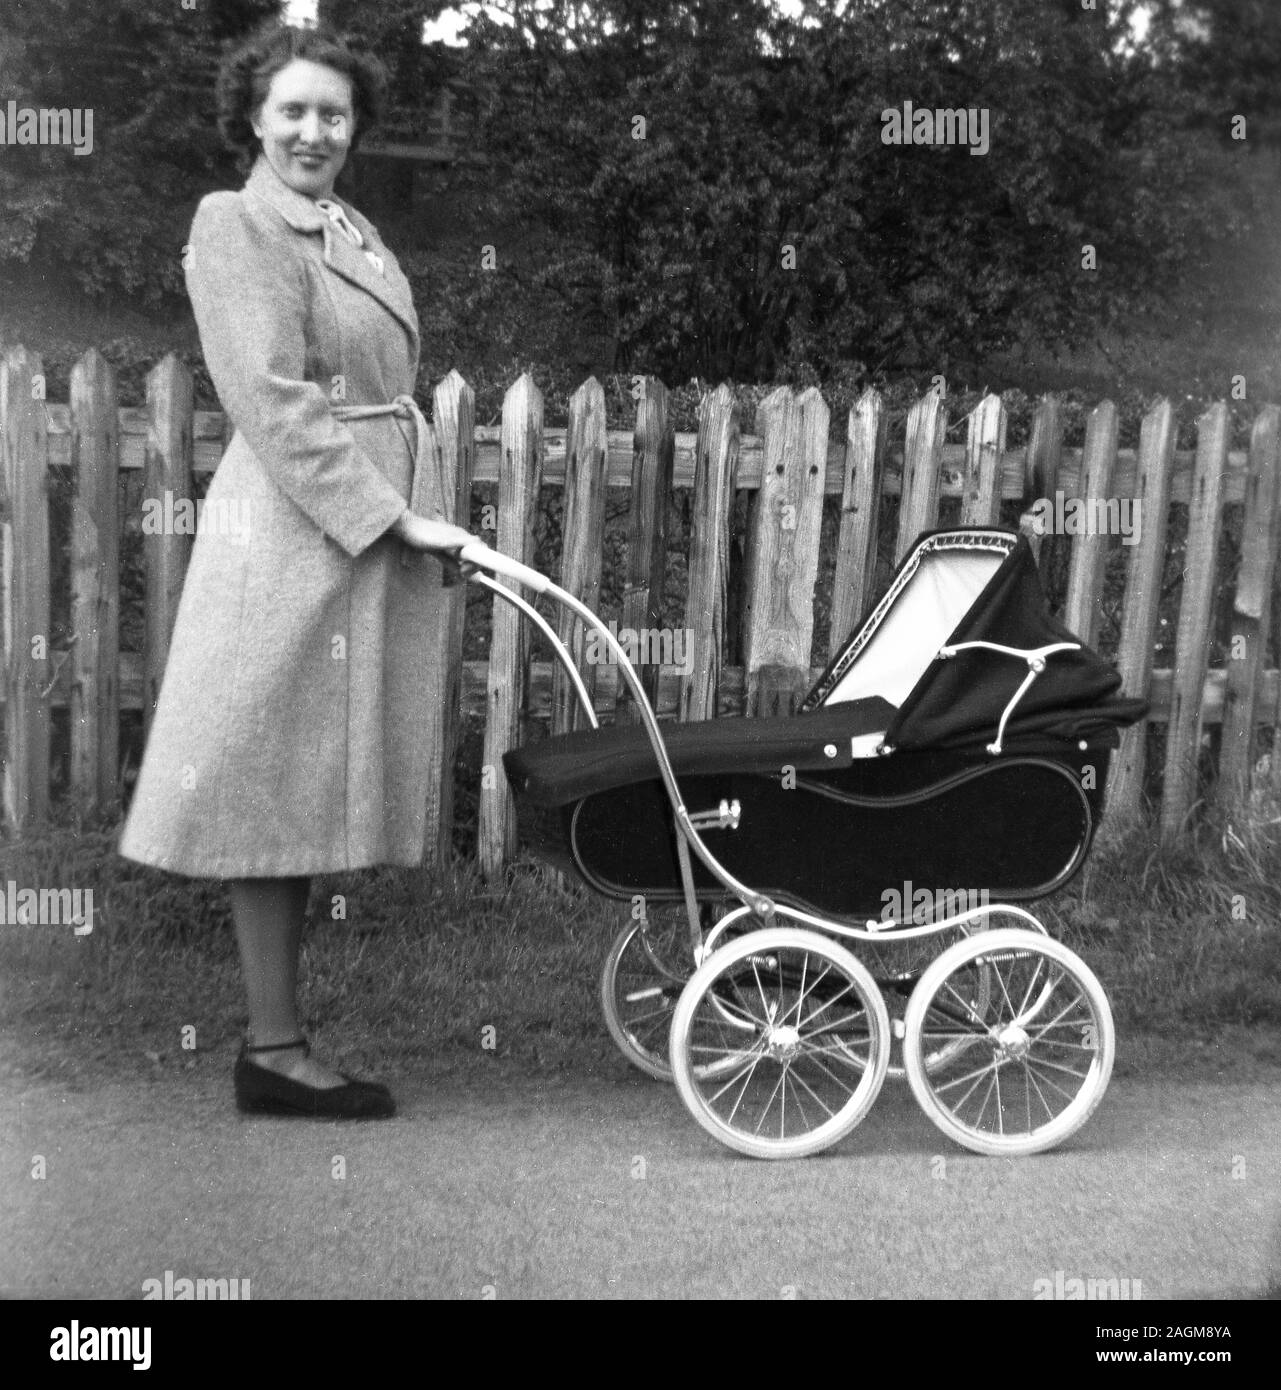 Années 1950, historique, une dame dans un manteau debout à l'extérieur tenant la poignée d'une voiture d'enfant traditionnelle à quatre roues construite par autocar ou poussette de l'époque, Angleterre, Royaume-Uni. Banque D'Images